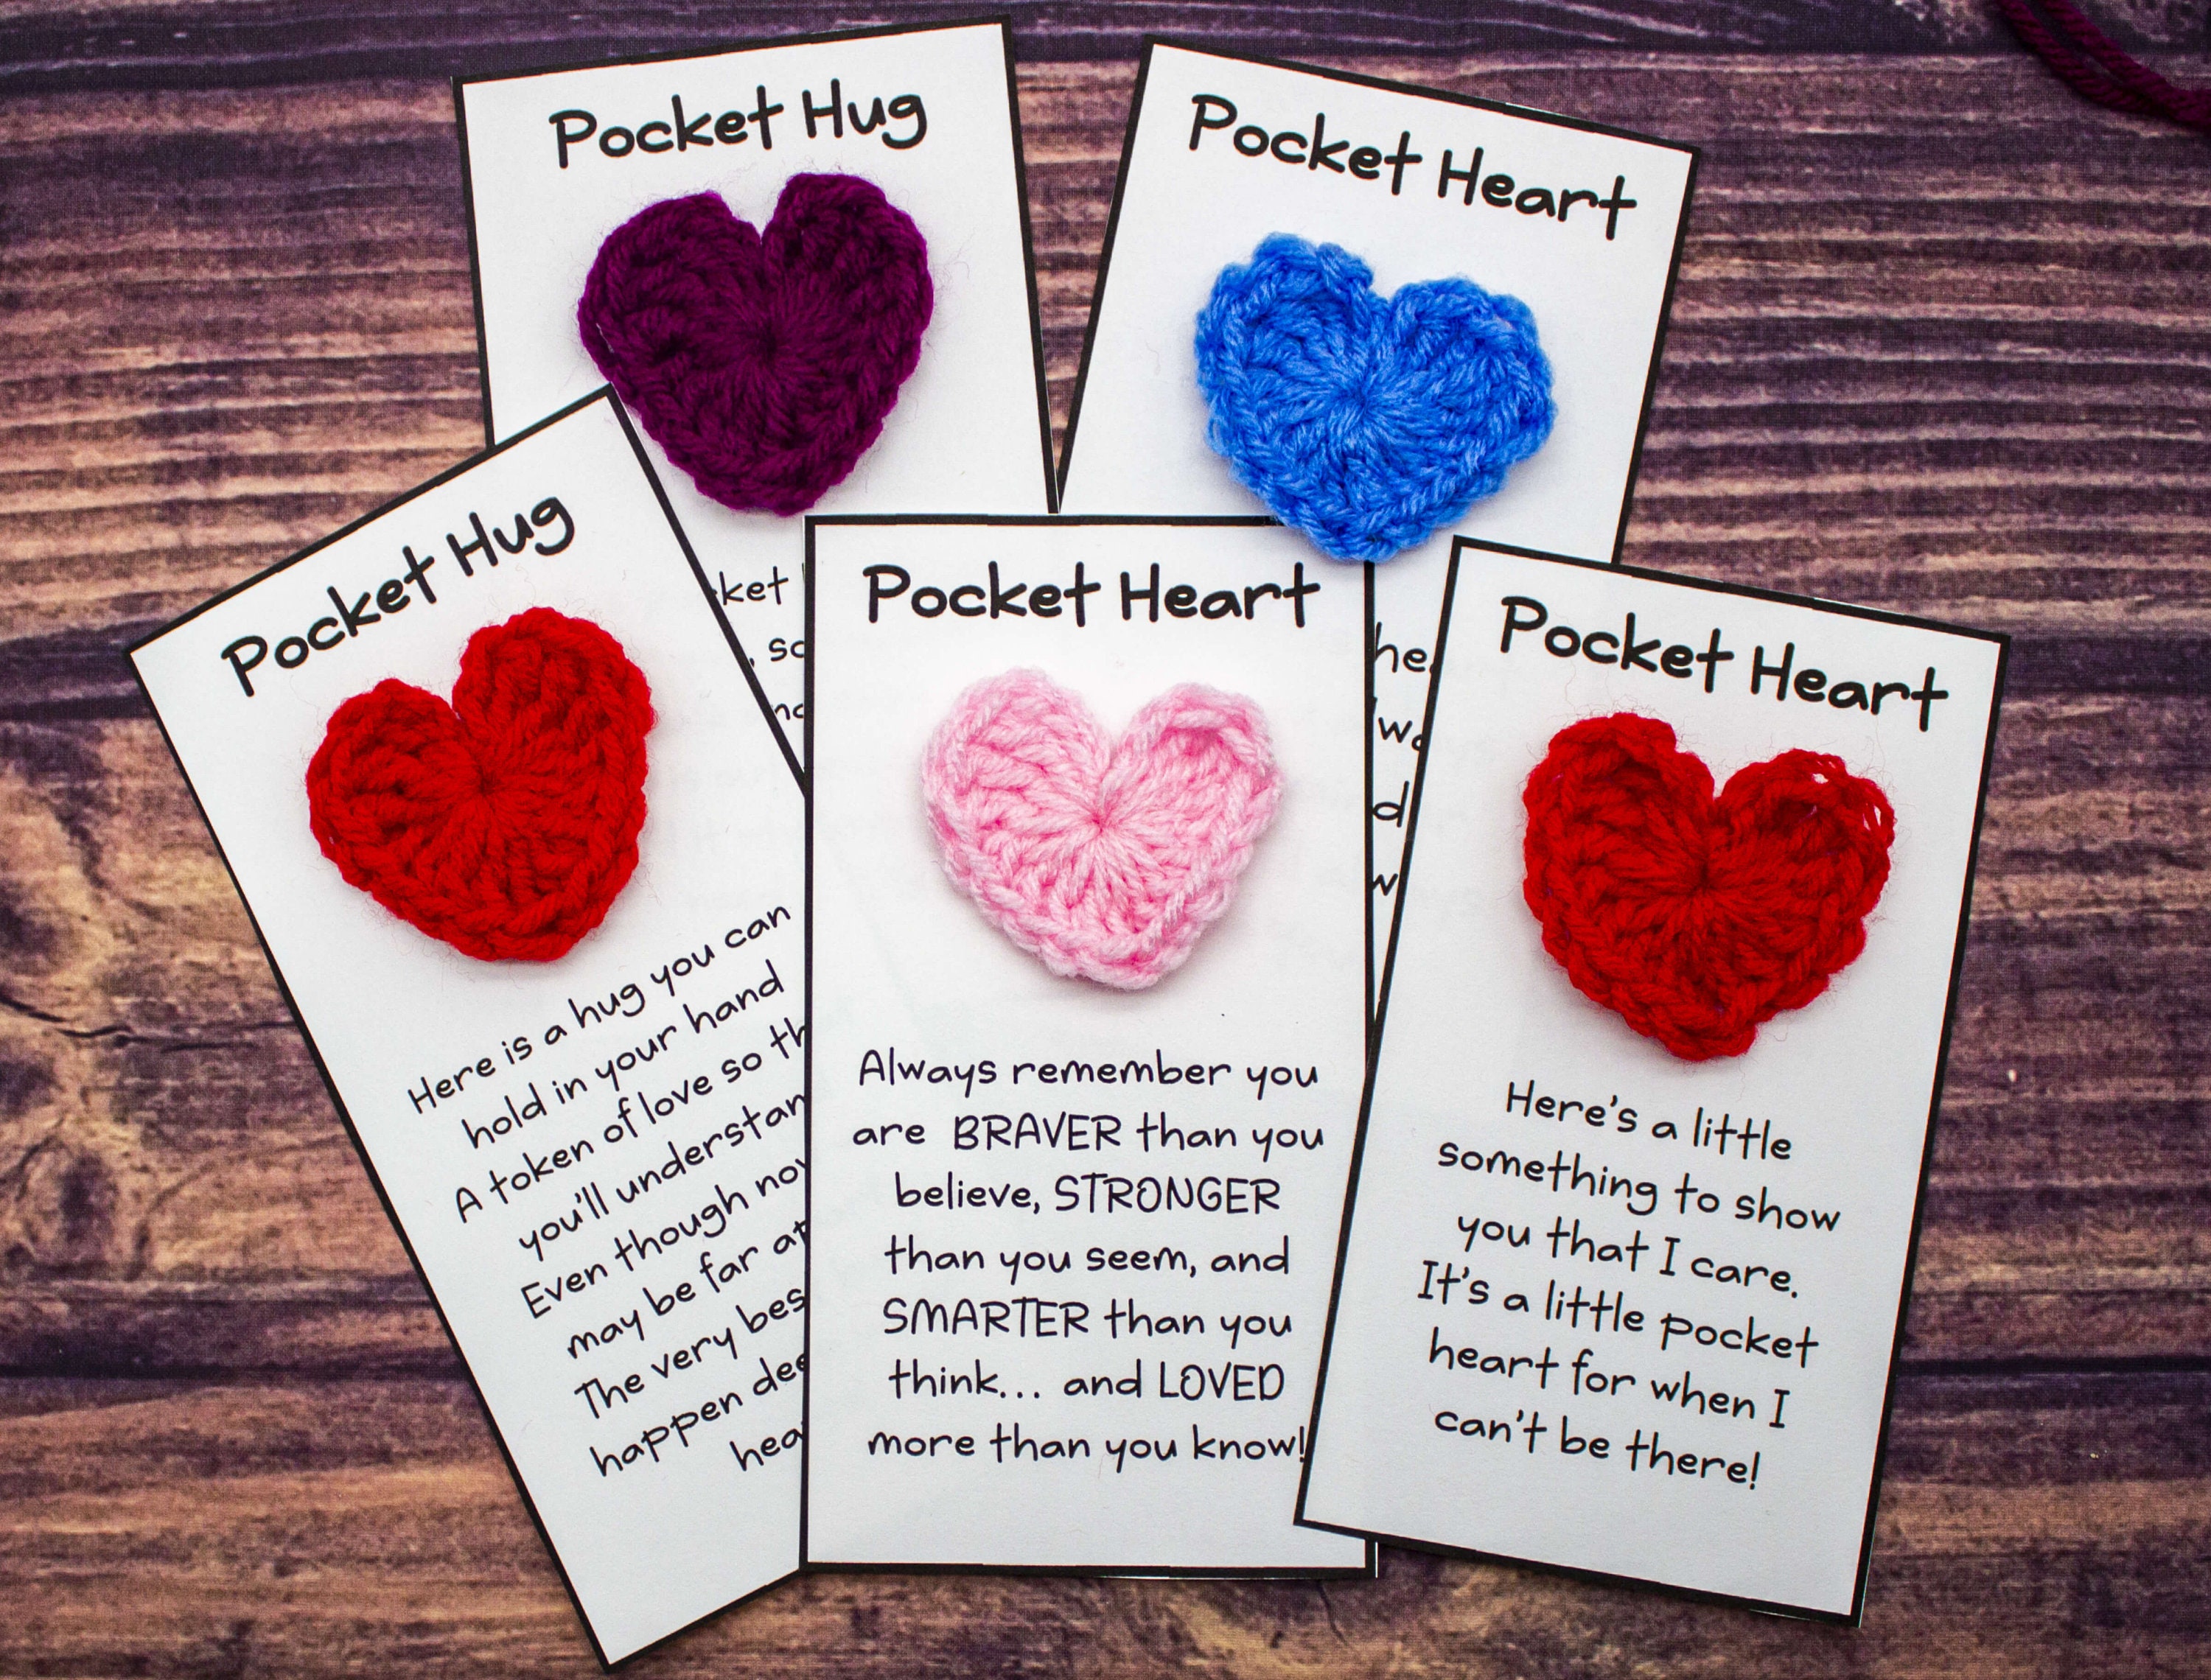 Pocket Hug Crochet Pattern Pocket Hug Quotes Included Pocket Heart